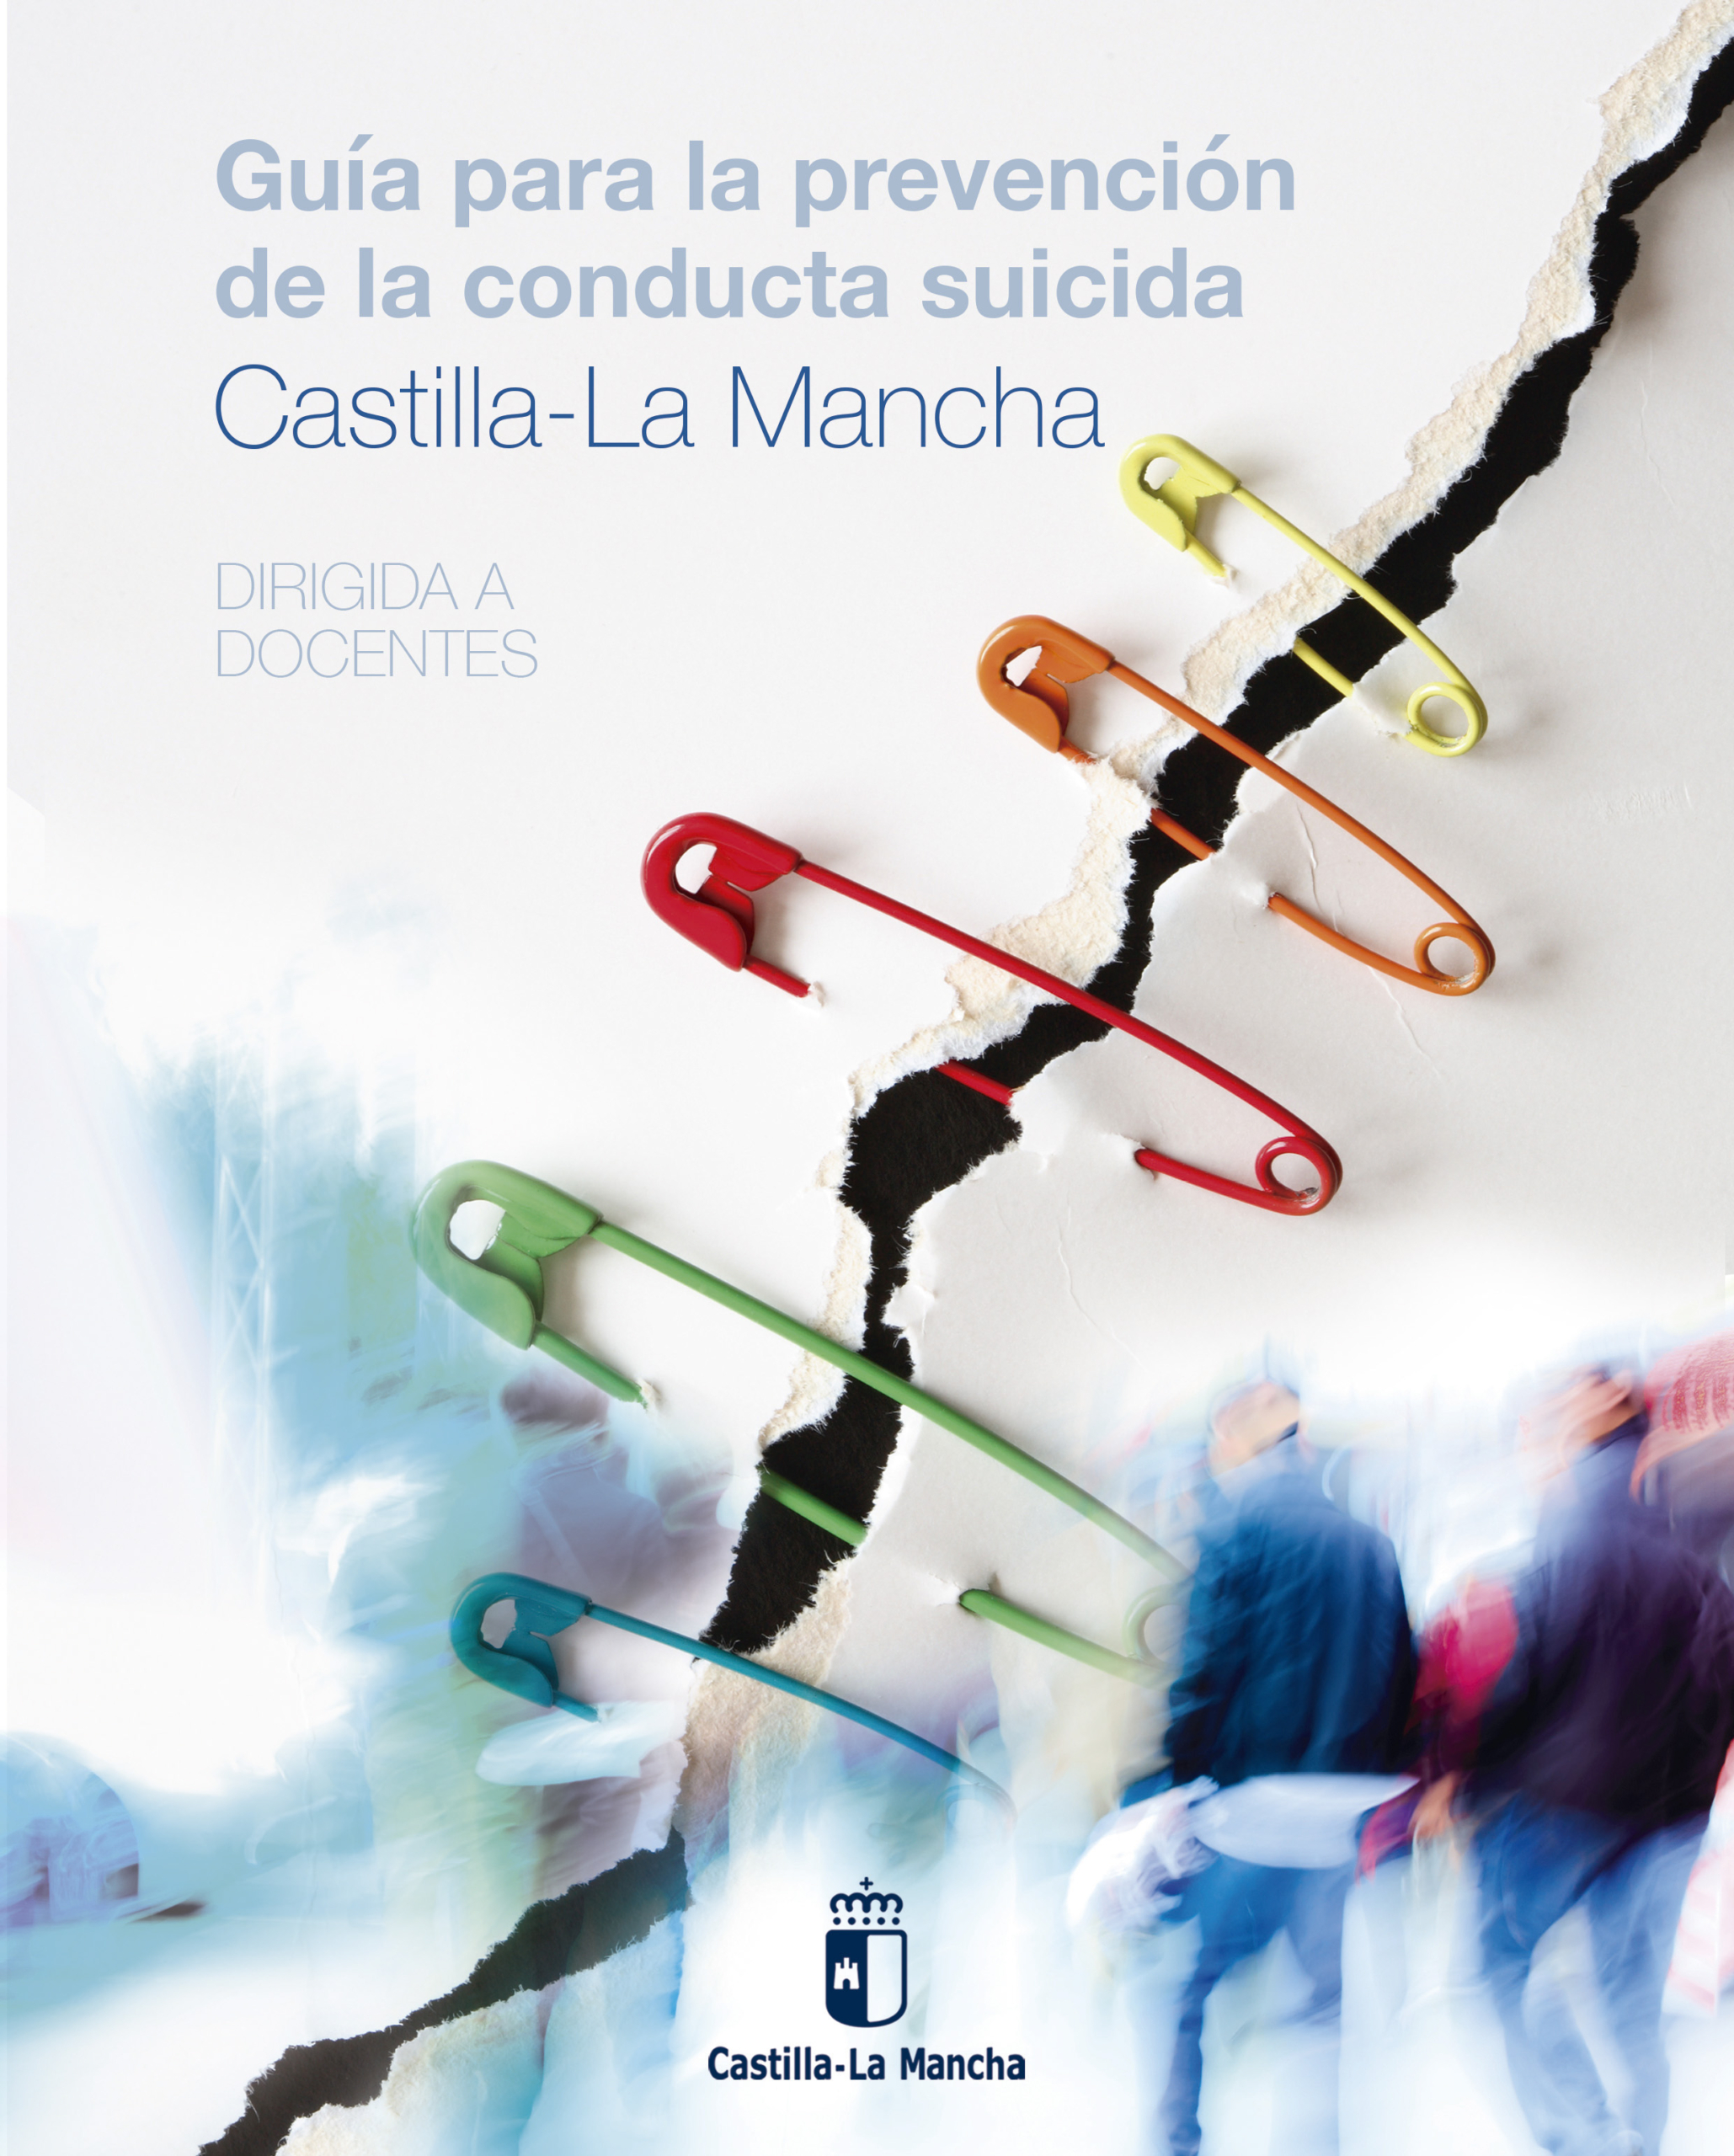 Guía para la prevención de la conducta suicida en Castilla-La Mancha,  dirigida a docentes – Colegio Oficial de la Psicología de Castilla-La Mancha